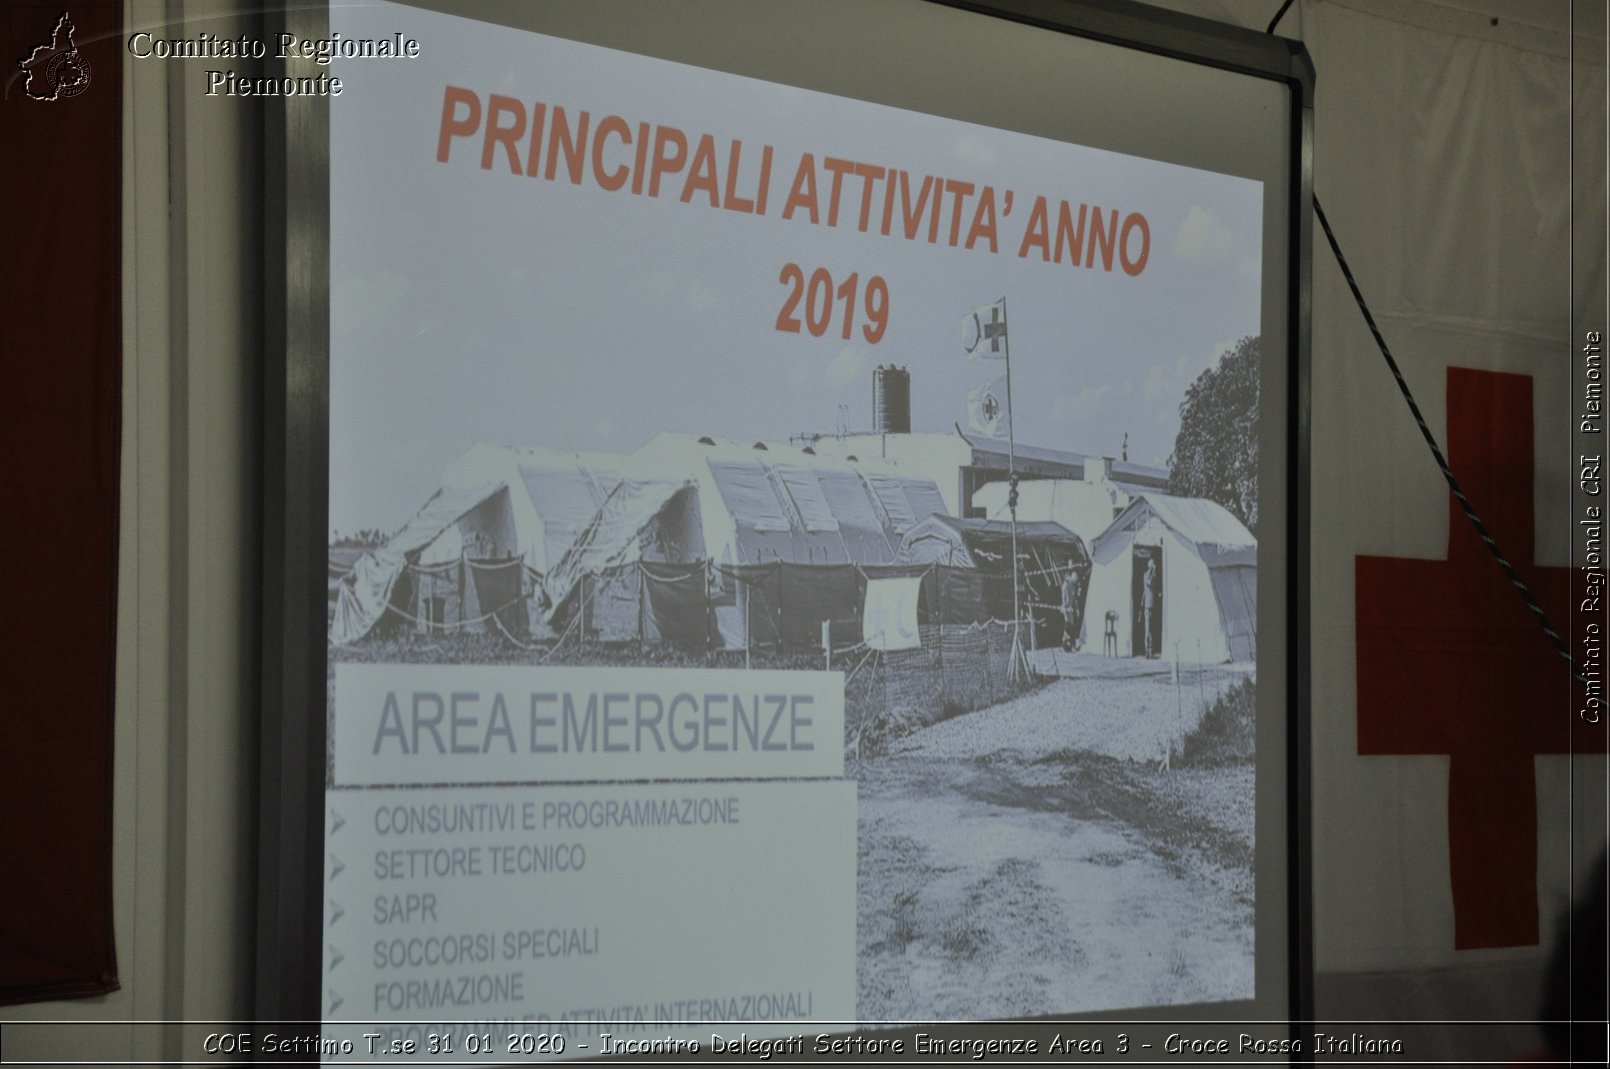 COE Settimo T.se 31 01 2020 - Incontro Delegati Settore Emergenze Area 3 - Croce Rossa Italiana